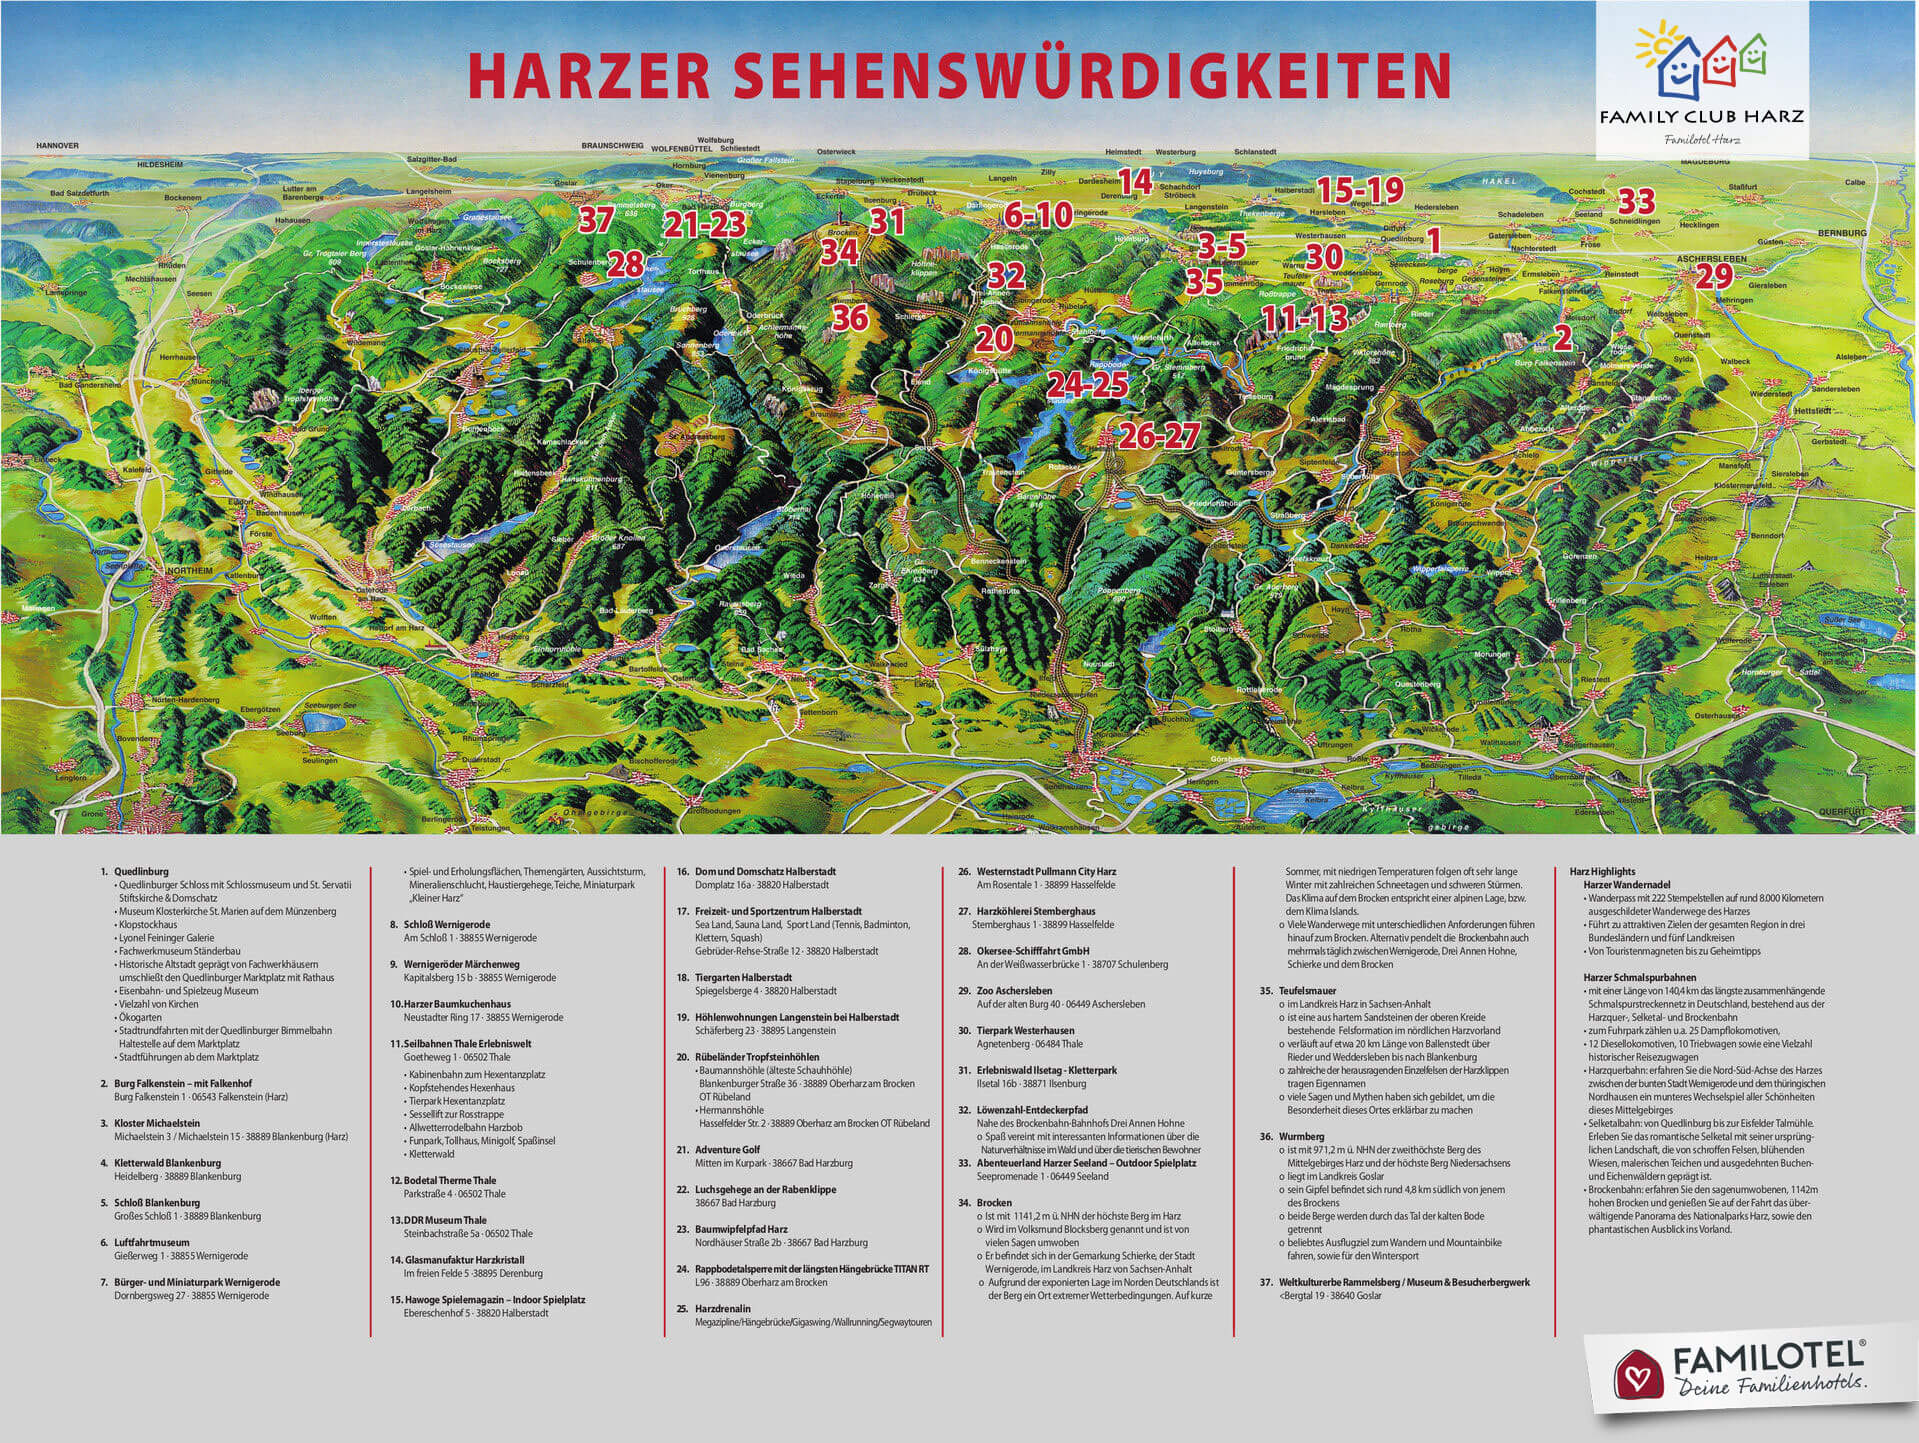 Harzer Sehenswürdigkeiten und Ausflugsziele